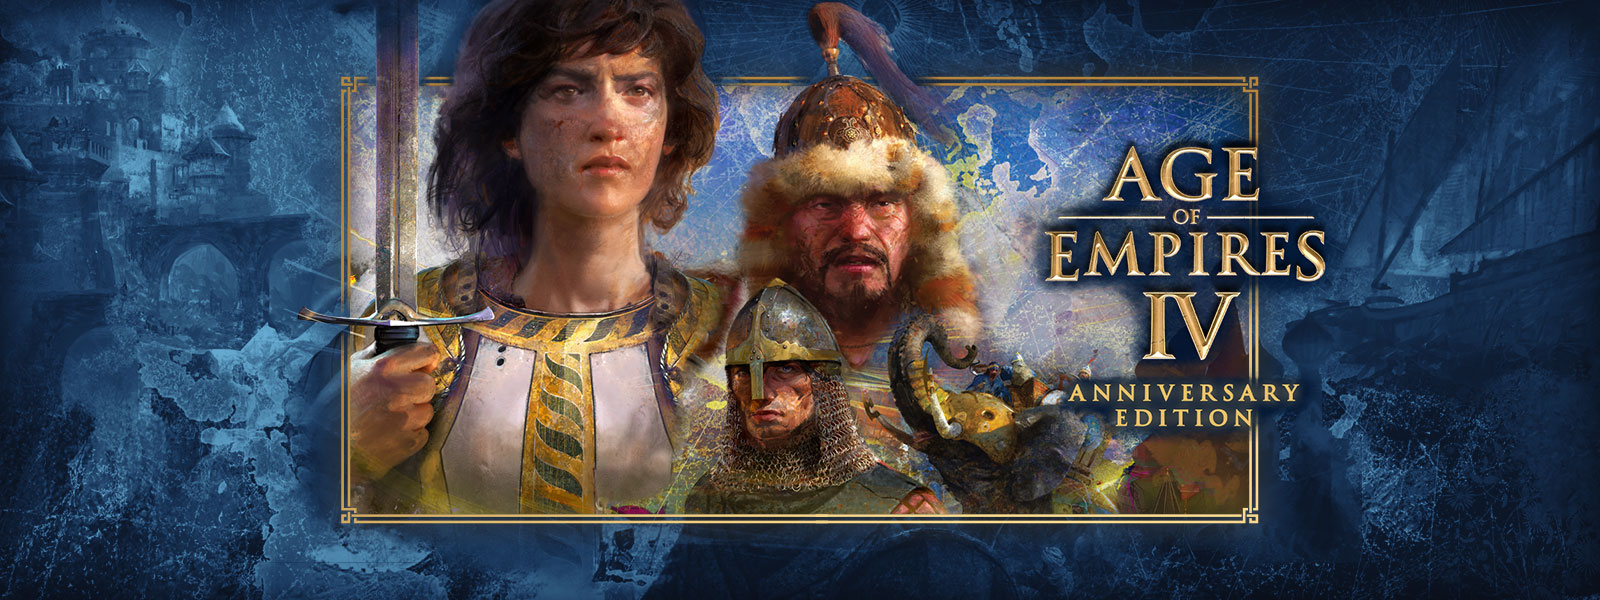 Age of Empires IV: Anniversary Edition. Tři postavy, kolem kterých jsou válečné výjevy a obrnění sloni.